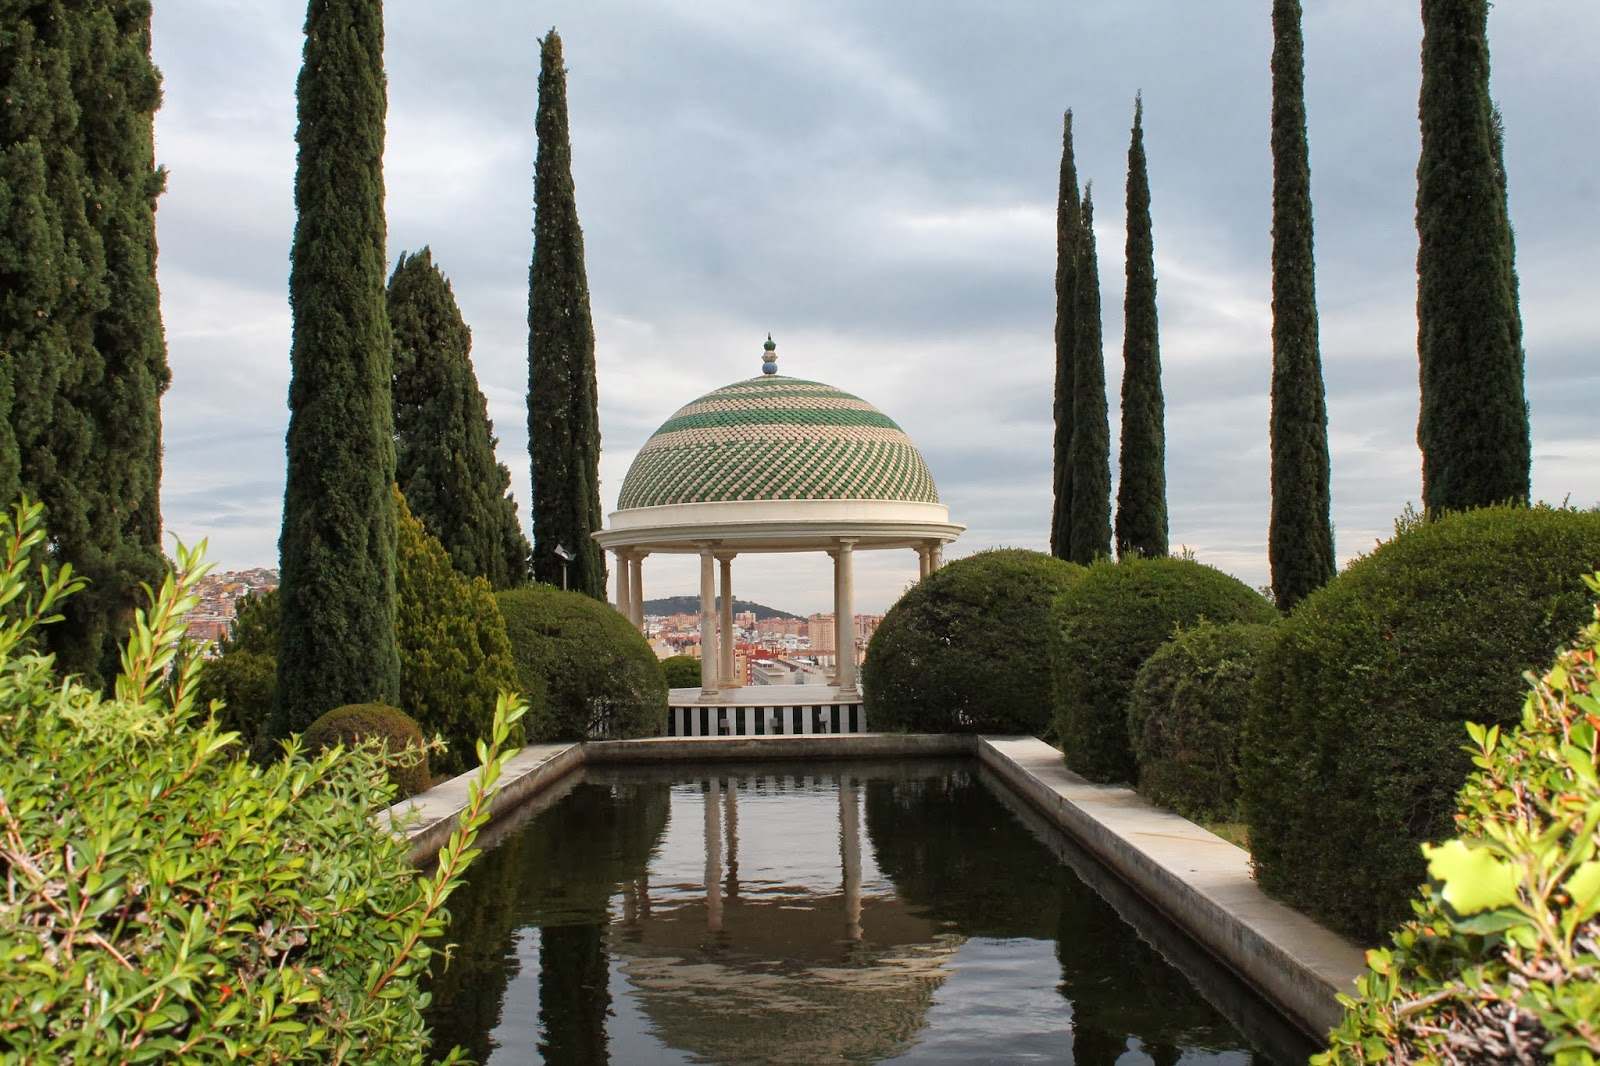 De Maleta En Maleta: Jardín Botánico De La Concepción, Málaga destiné Jardin Botanico De La Concepcion